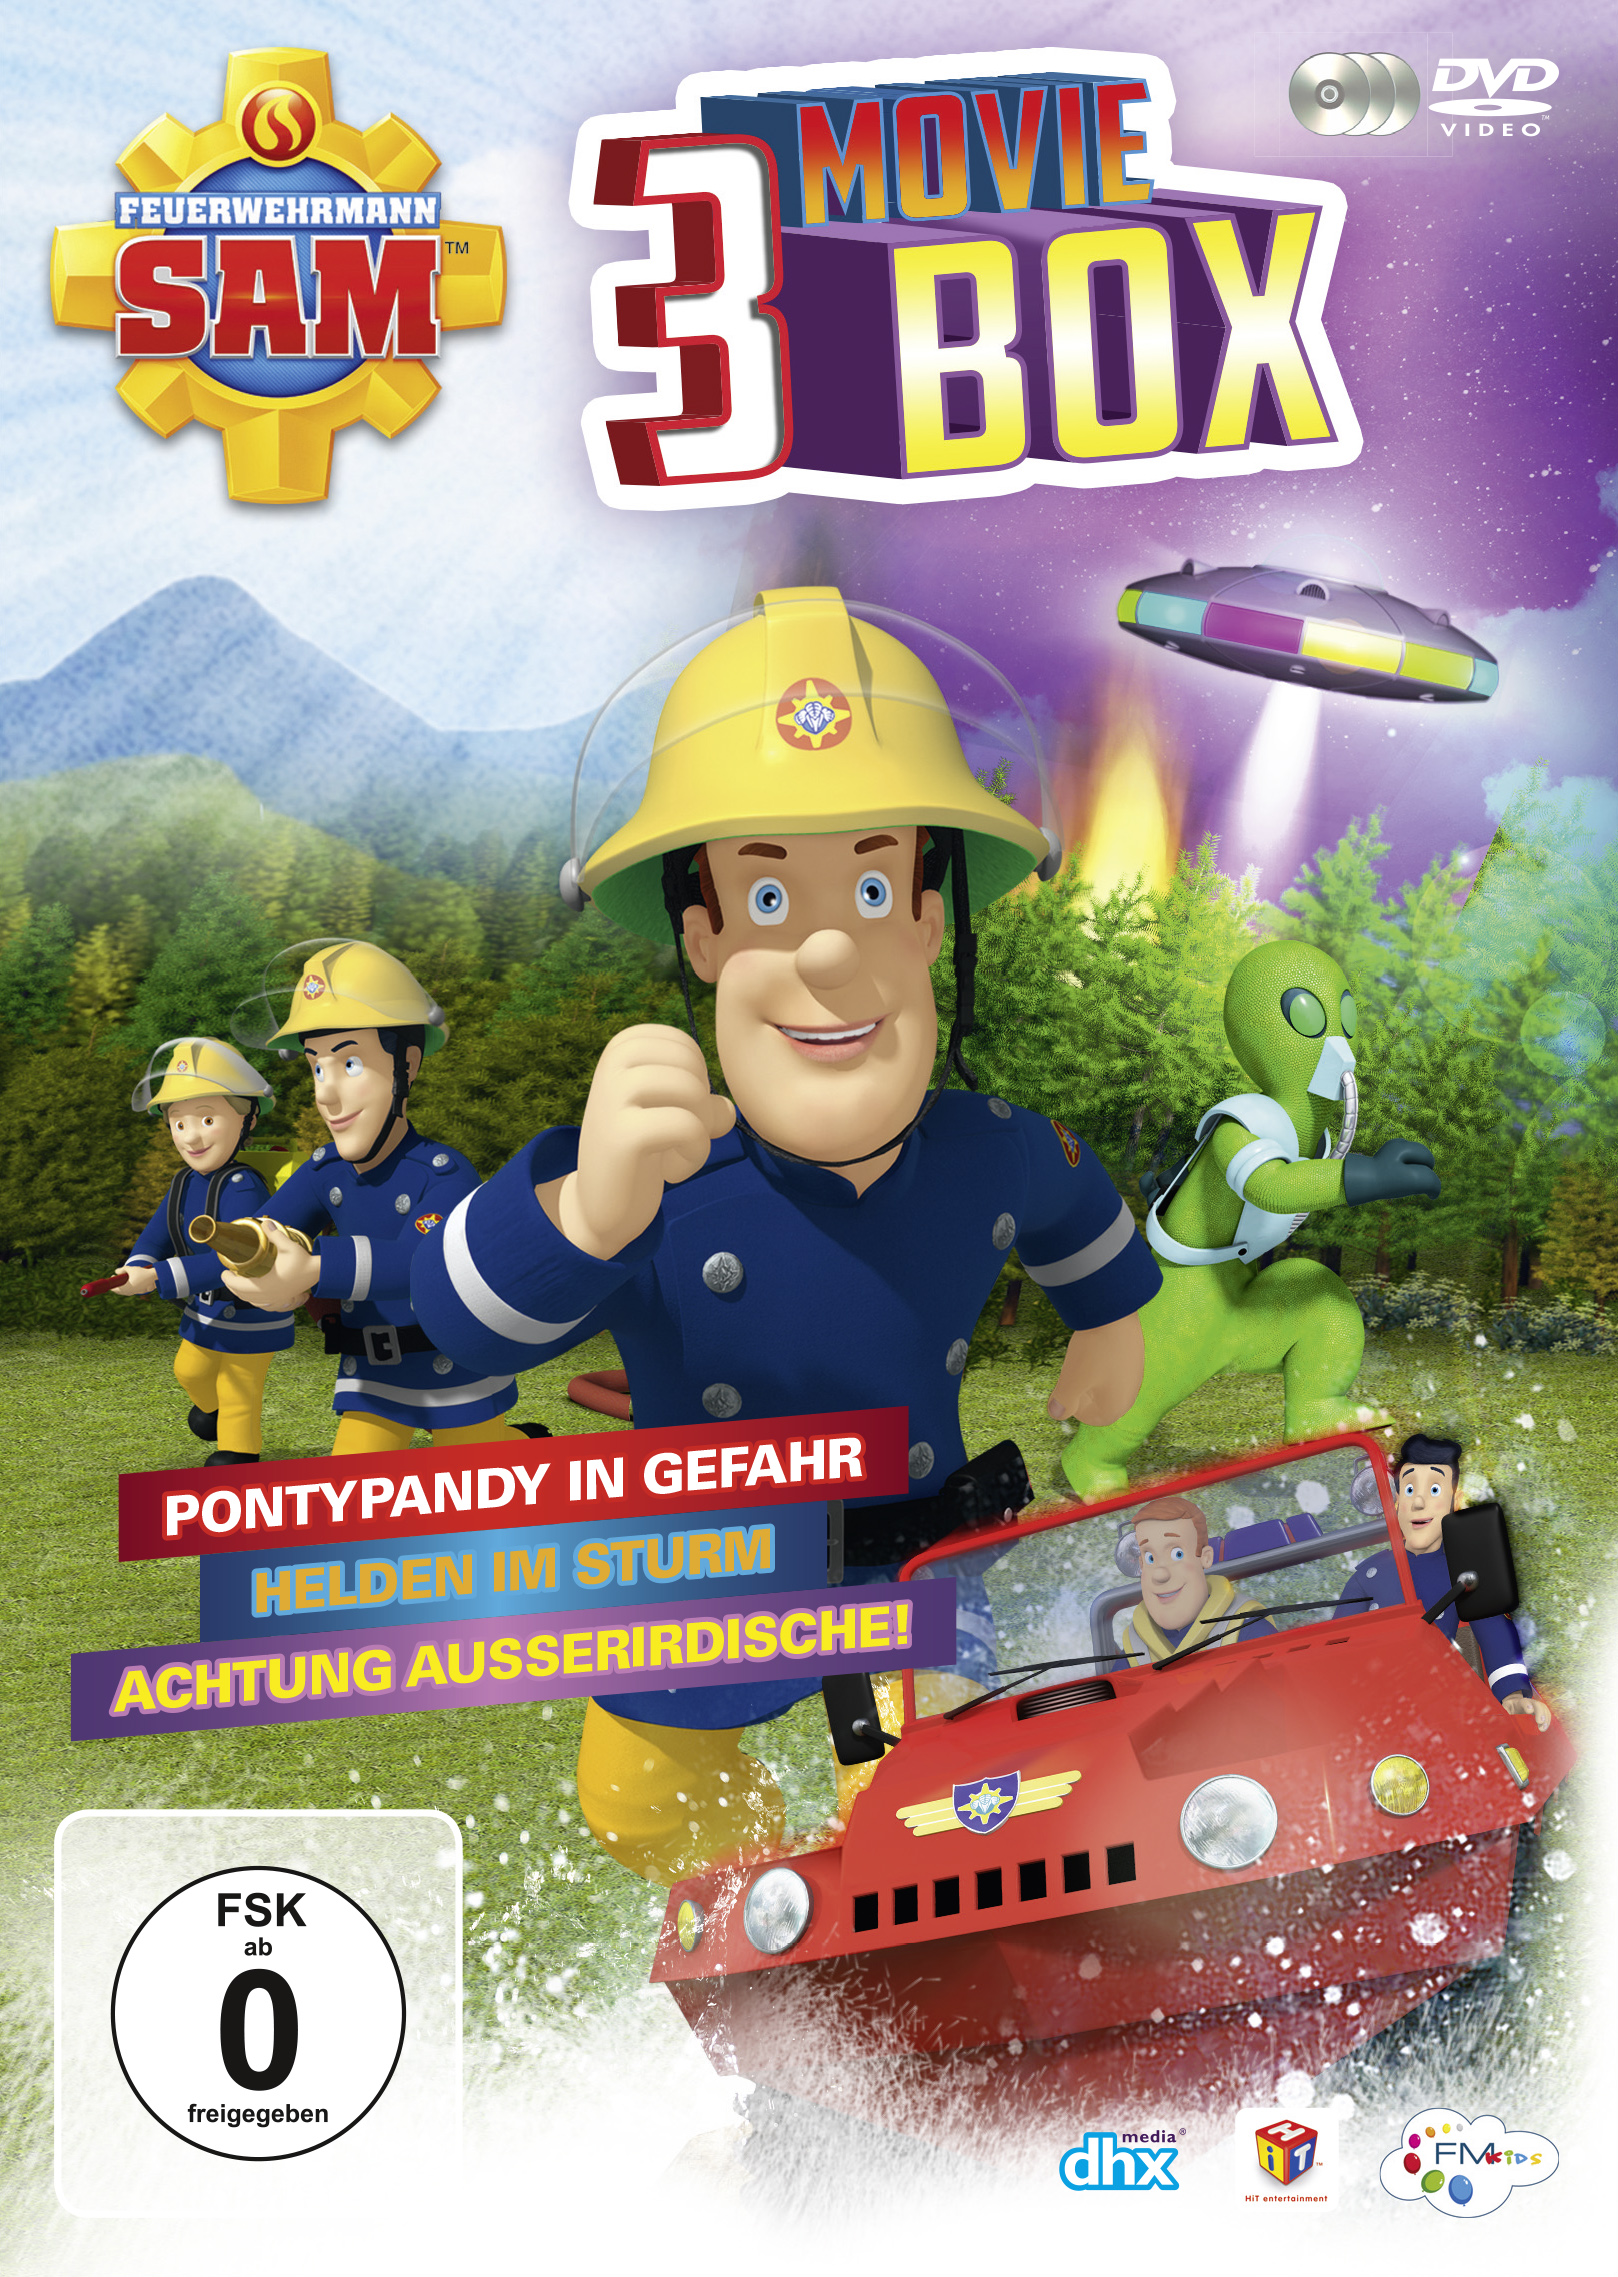 Feuerwehrmann 3 Sam (Ltd.) DVD Moviebox